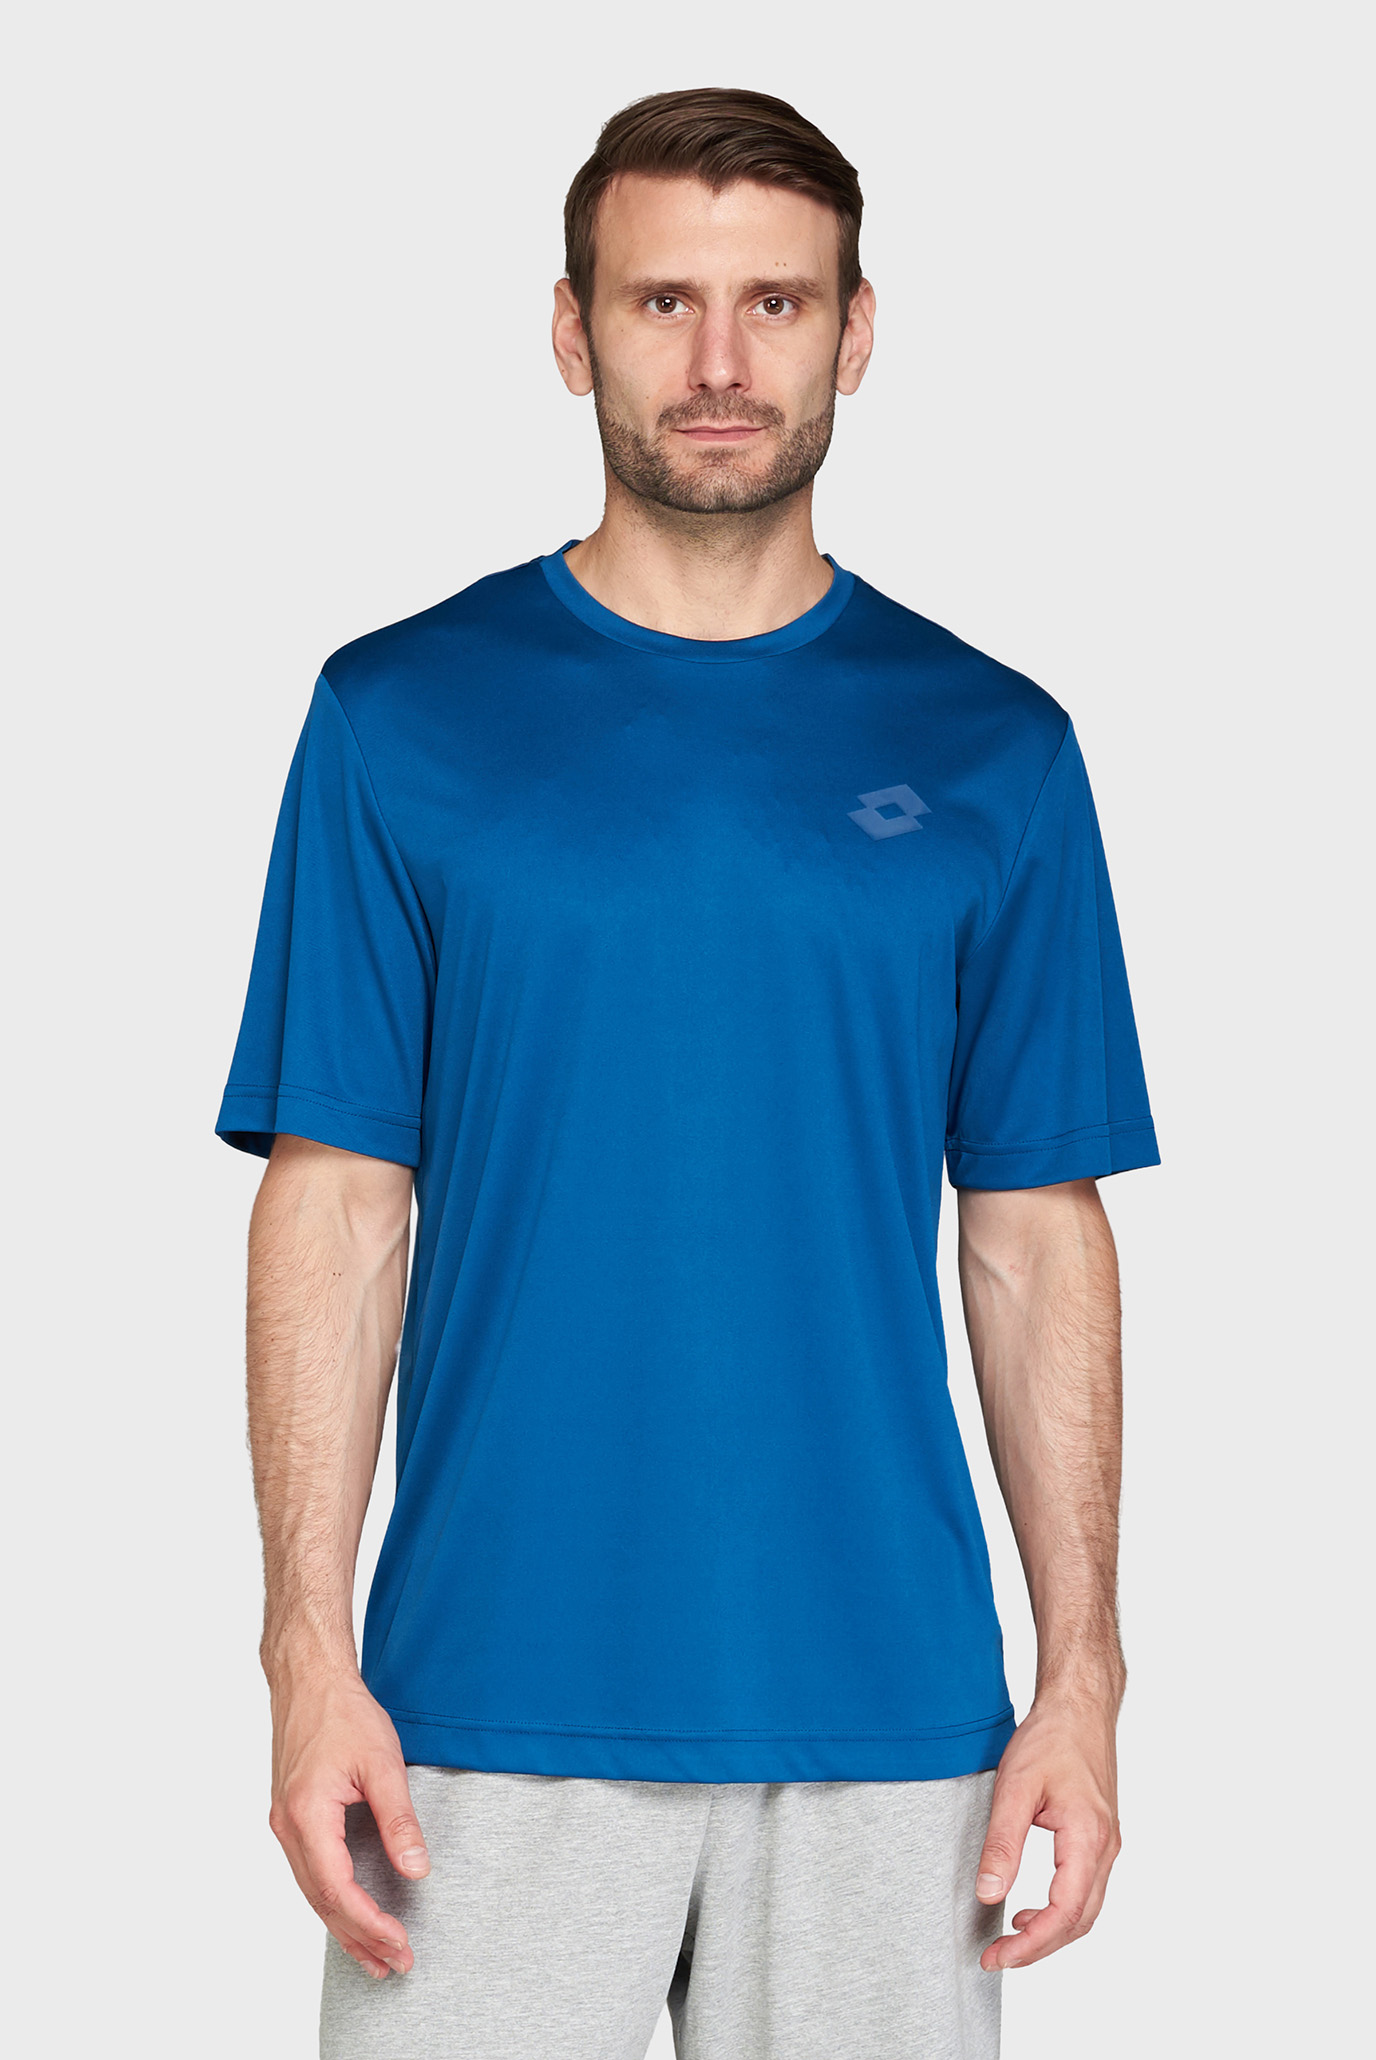 Мужская синяя футболка MSP TEE II 1